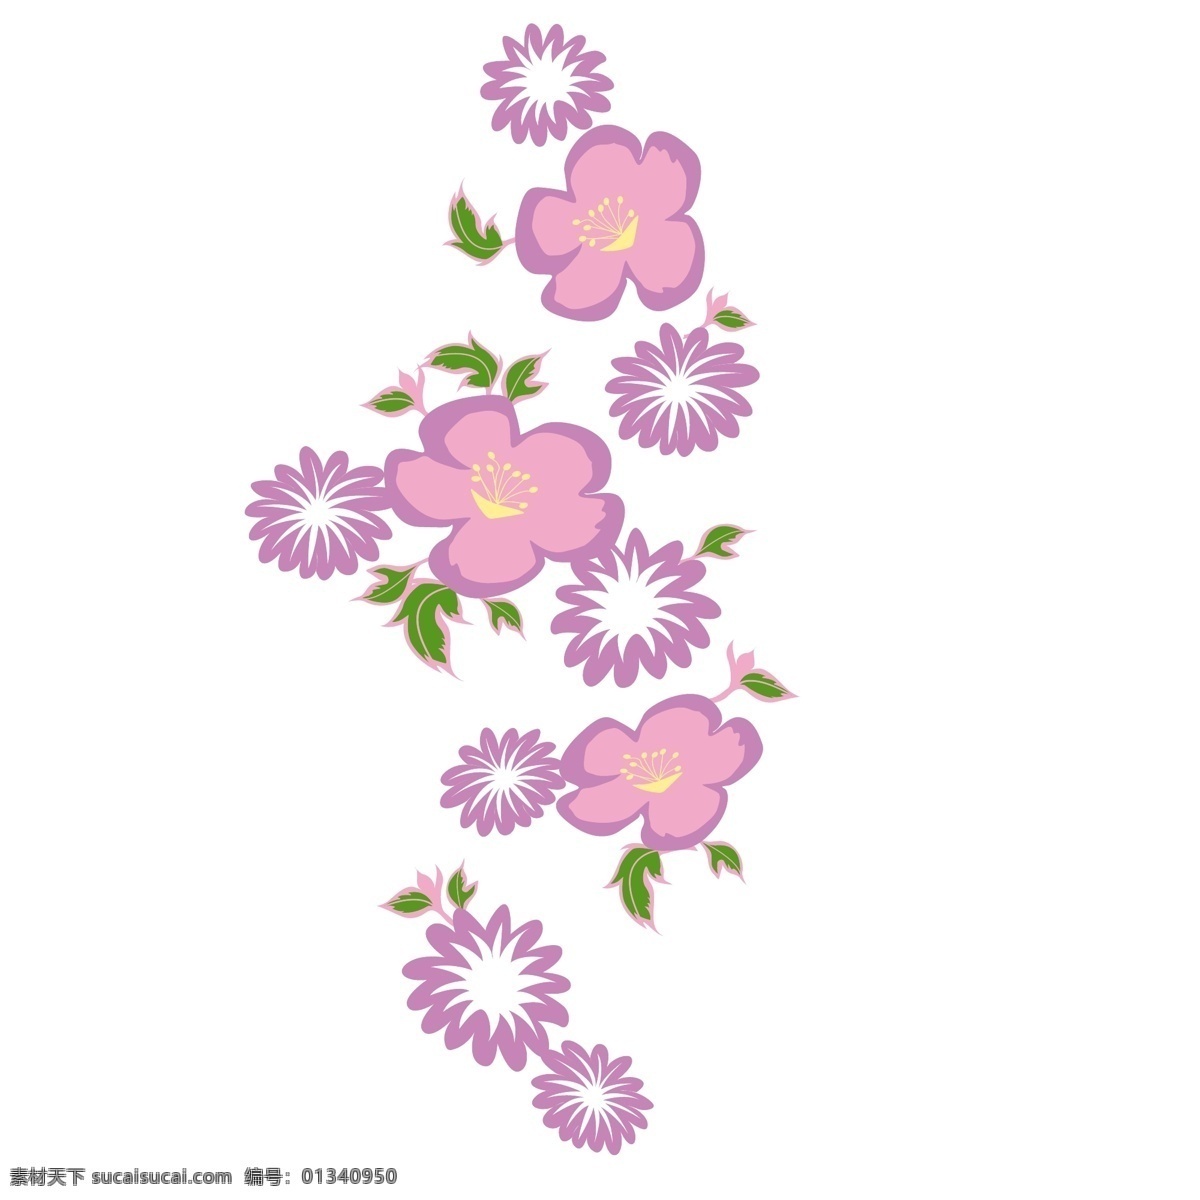 印花 矢量图 粉色 服装图案 花卉 印花矢量图 优雅植物 面料图库 服装设计 图案花型